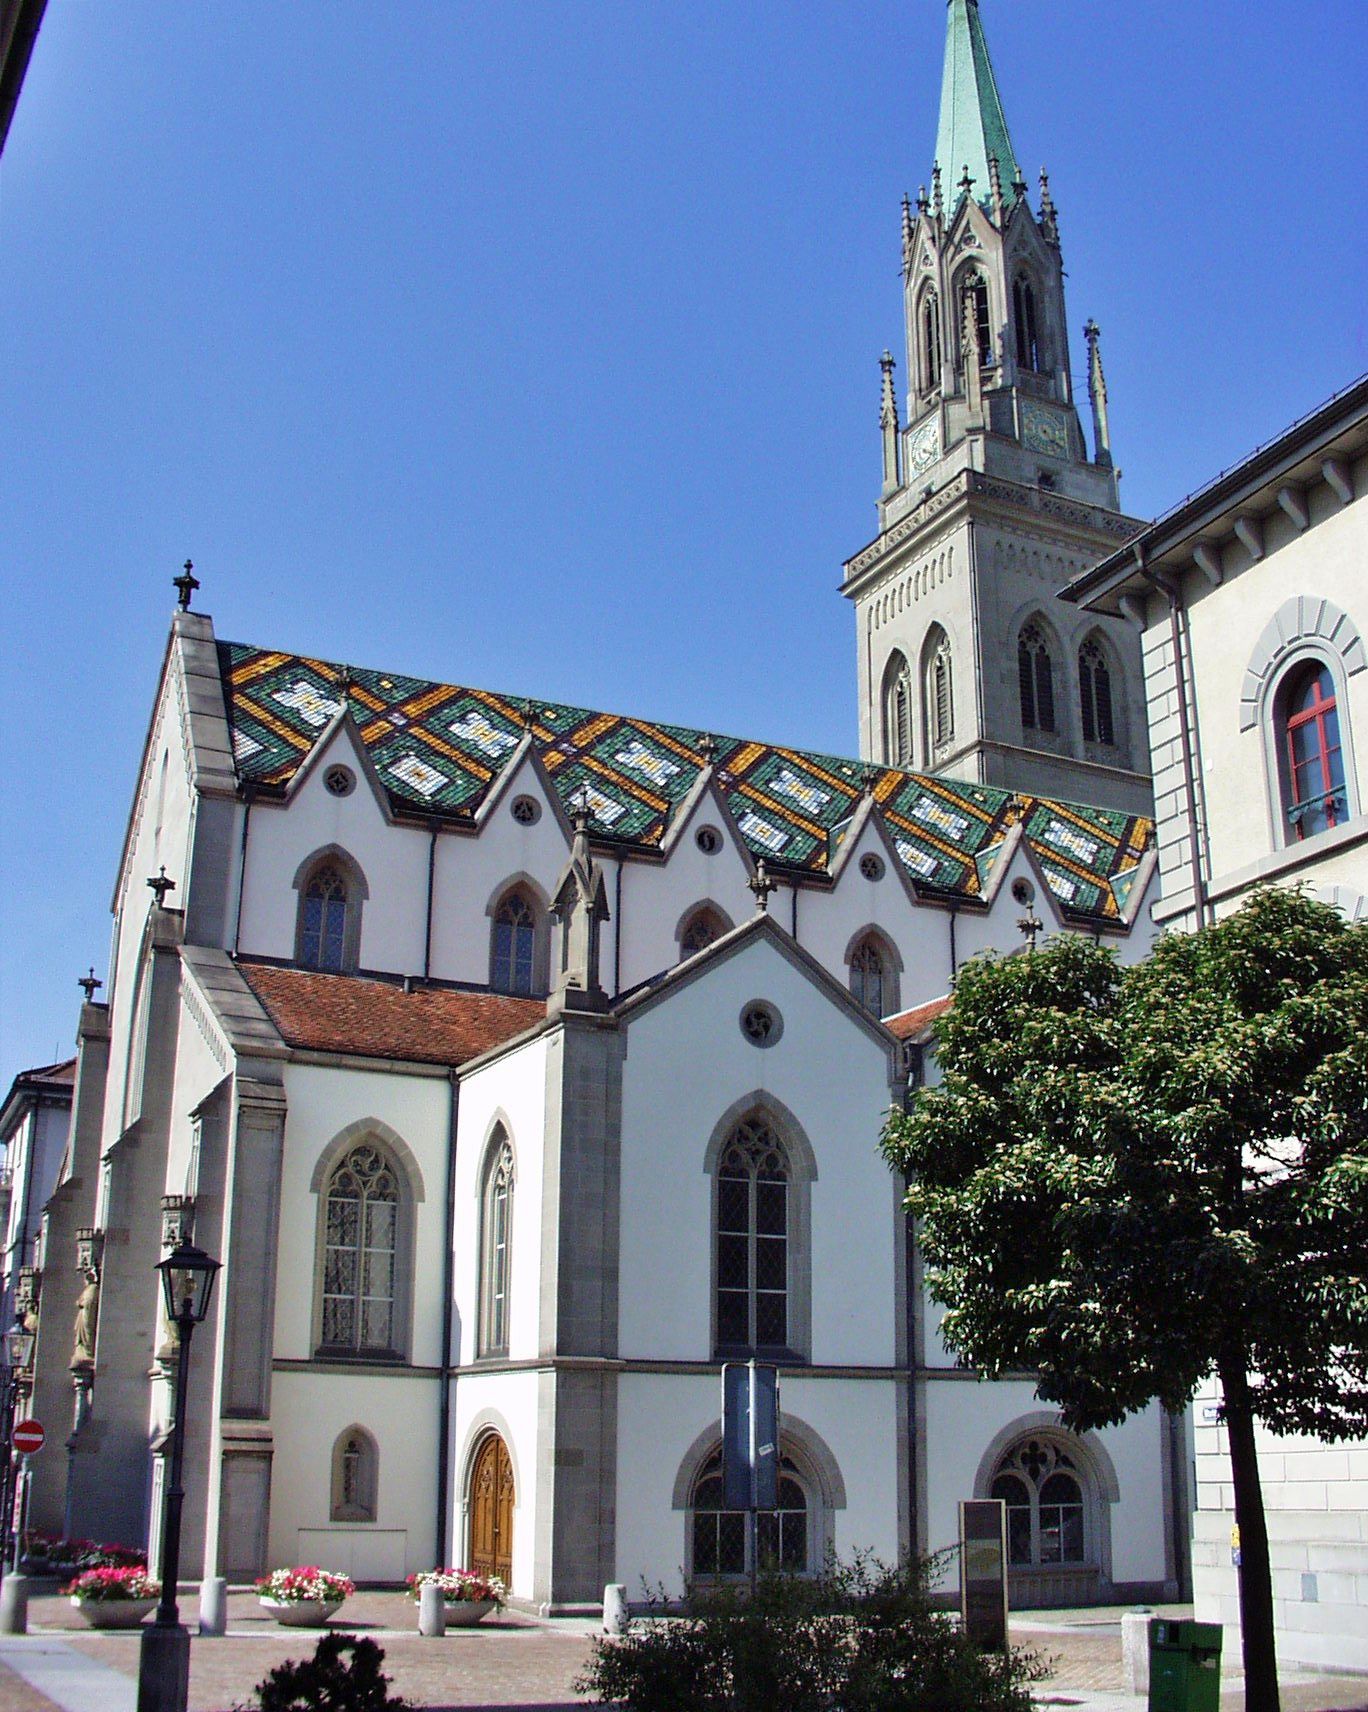 St. Laurenzenkirche © Andreas schweizer